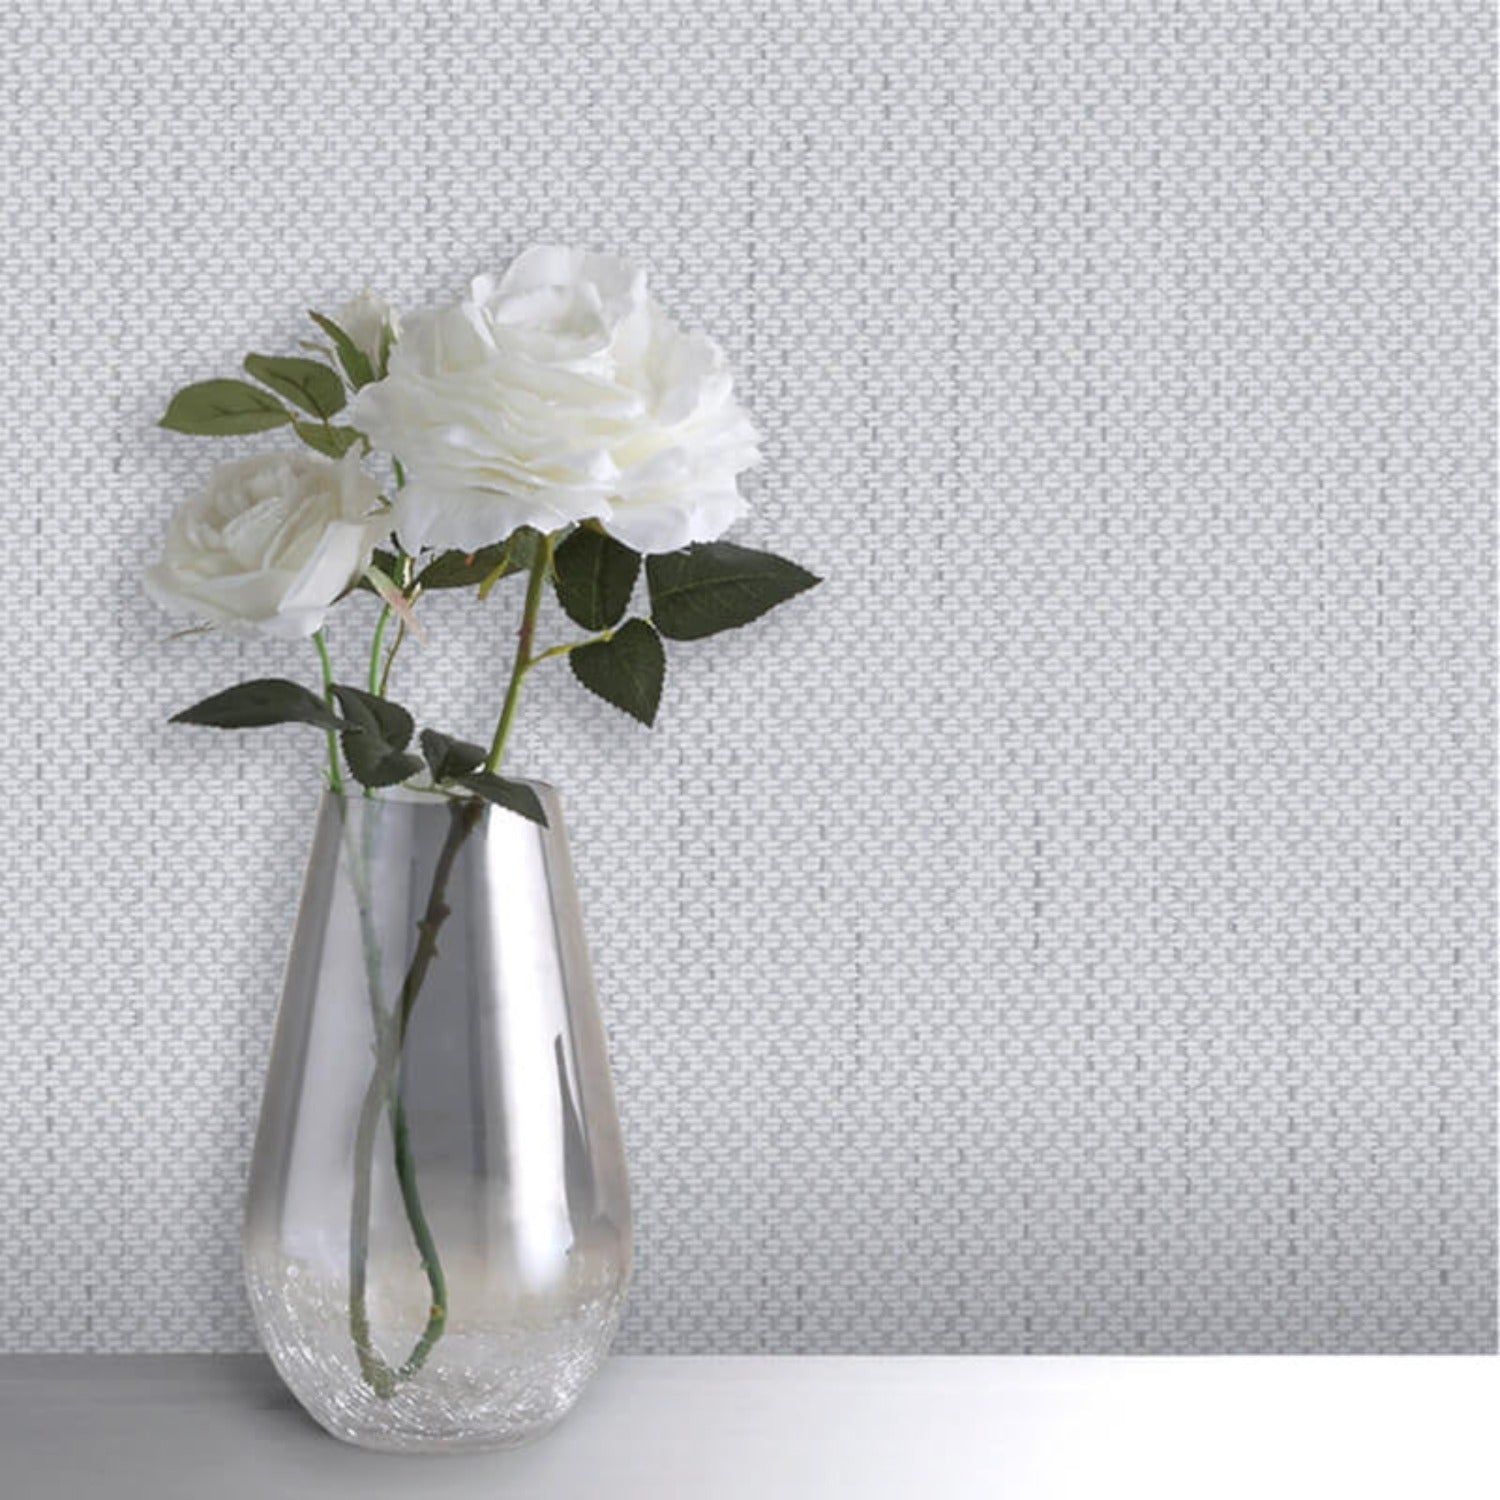 Amelie Texture Grey Wallpaper | WonderWall by Nobletts | #Variant SKU# | Belgravia